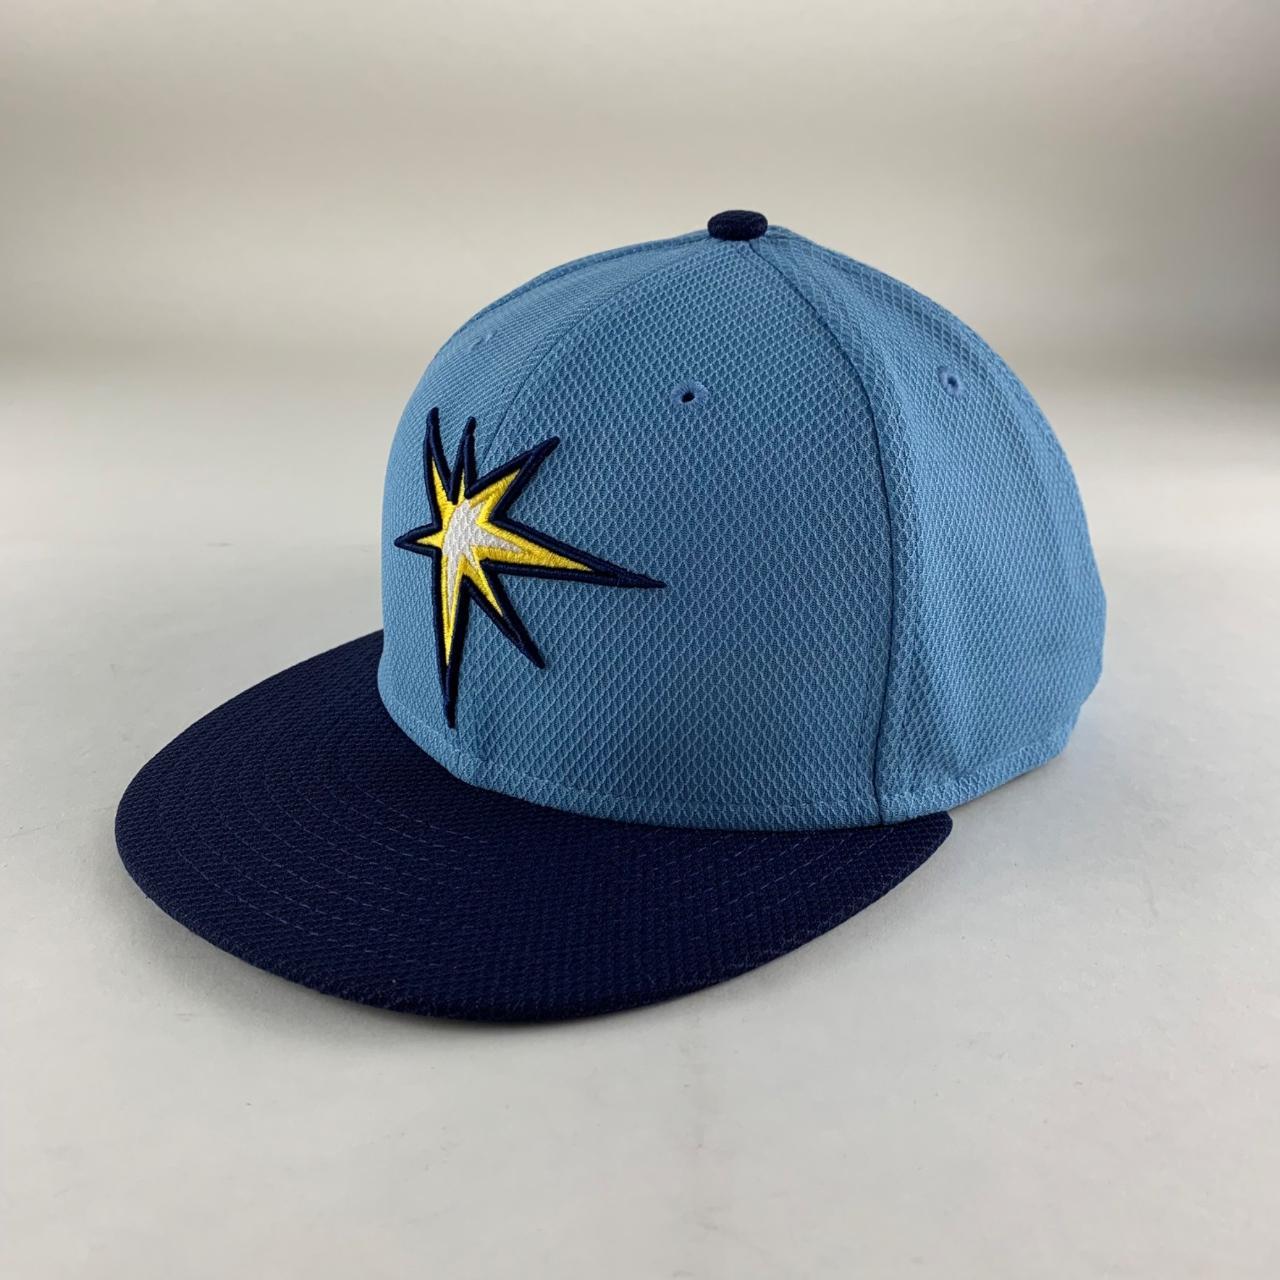 New Era Men's Caps - Blue